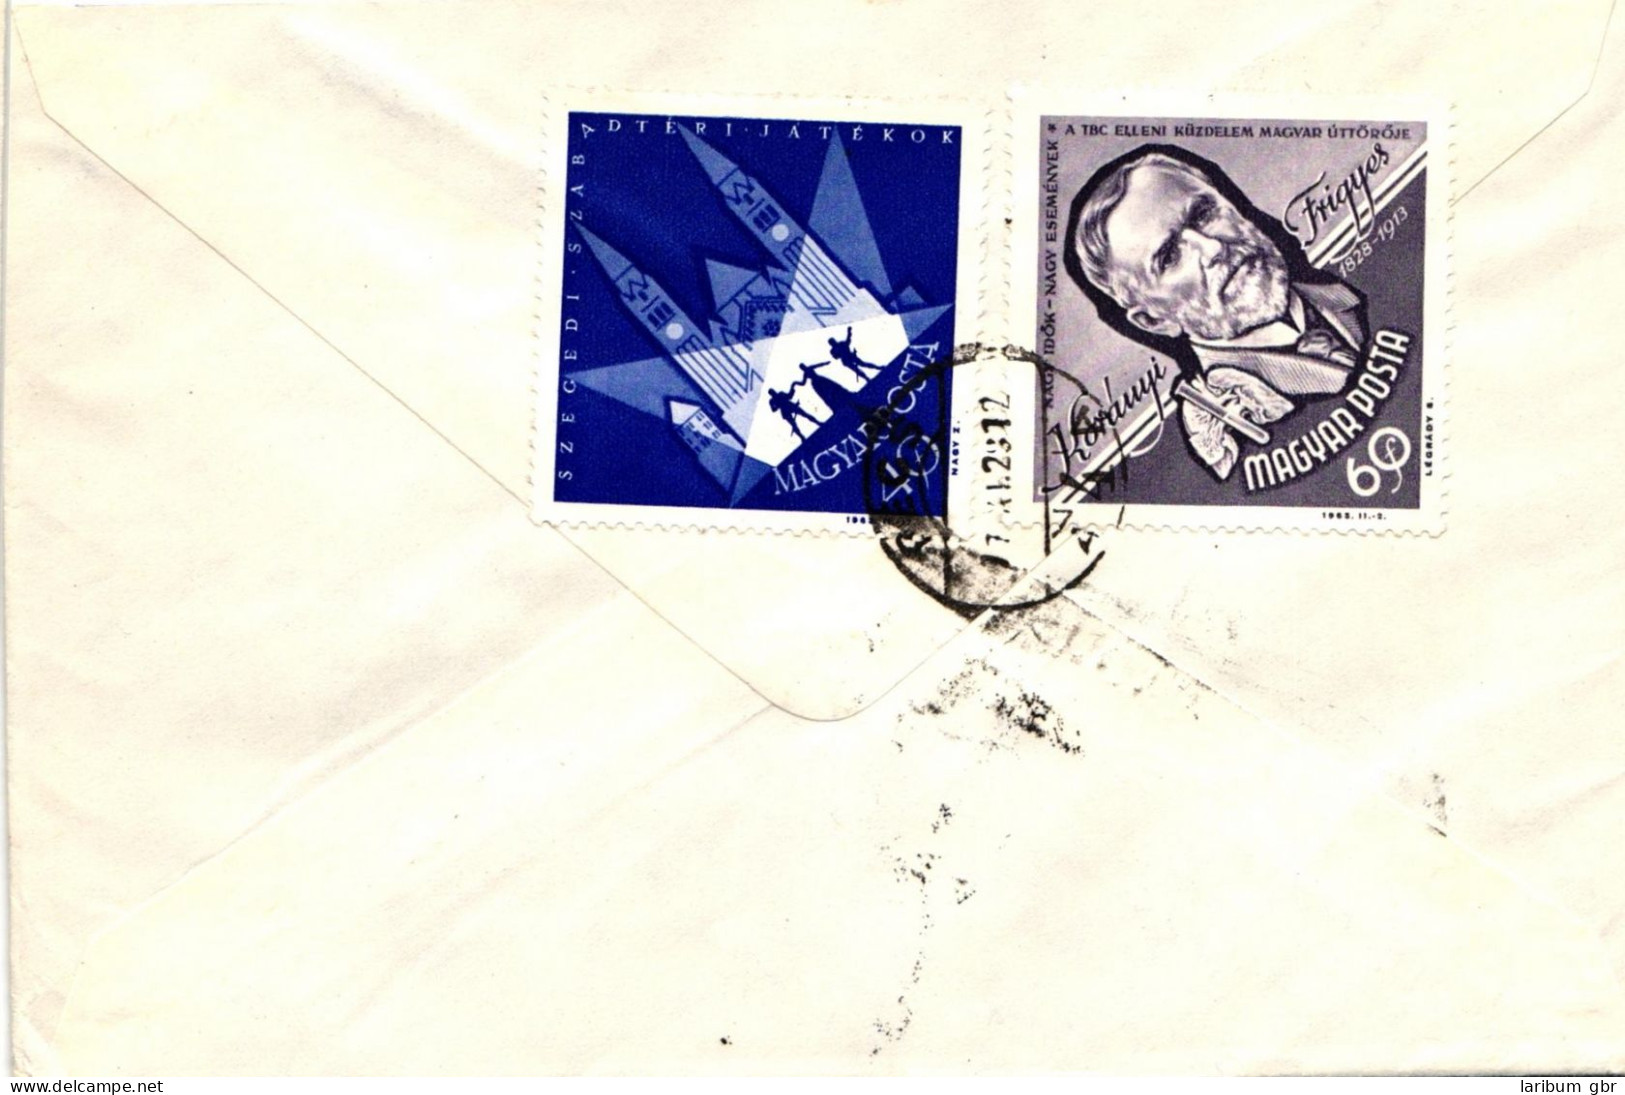 Ungarn 3214-19 A/B verteilt auf 6 Briefe als Einschreiben nach Aachen #JD100